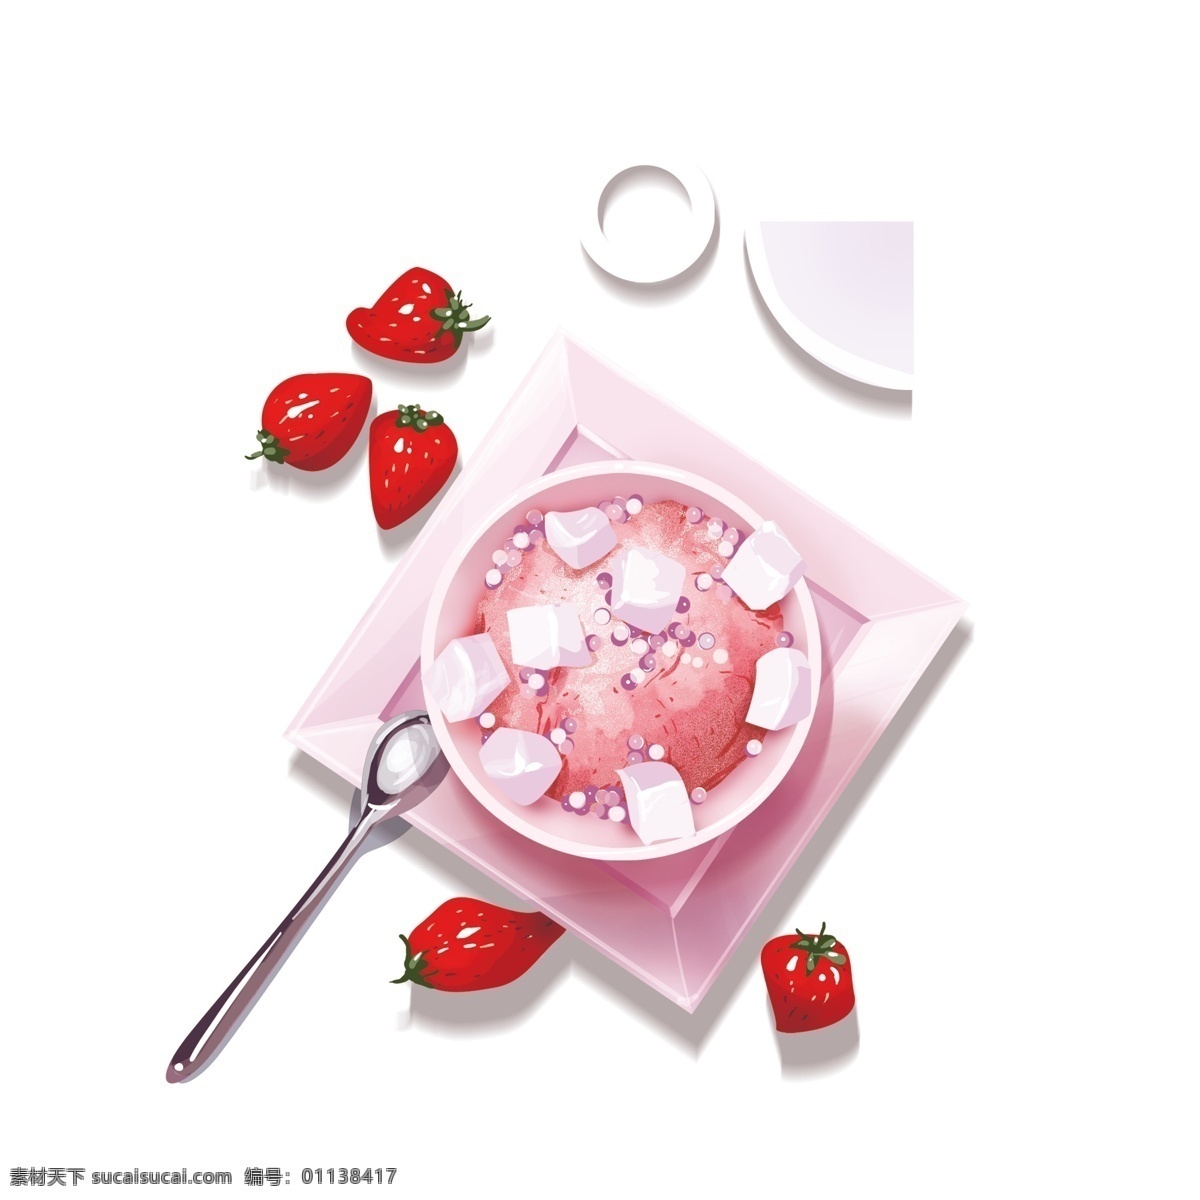 美味 草莓 冰淇淋 图案 元素 早餐 草莓冰淇淋 元素设计 简约 创意元素 免扣元素 夏日甜品